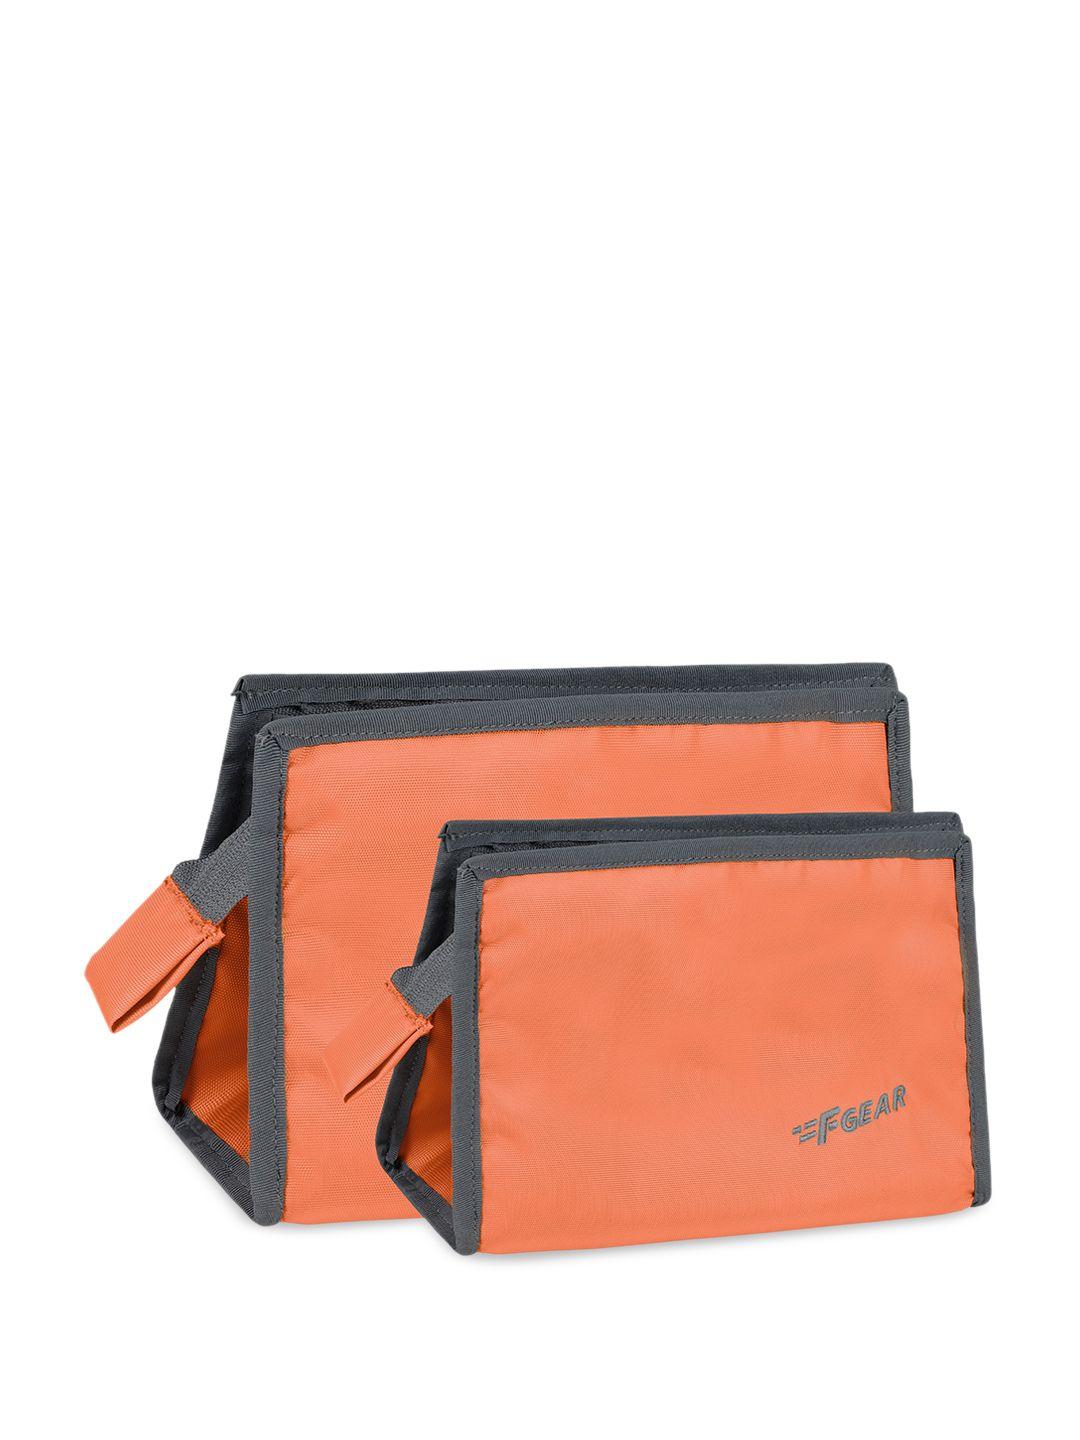 f gear set of 2 waterproof travel pouch